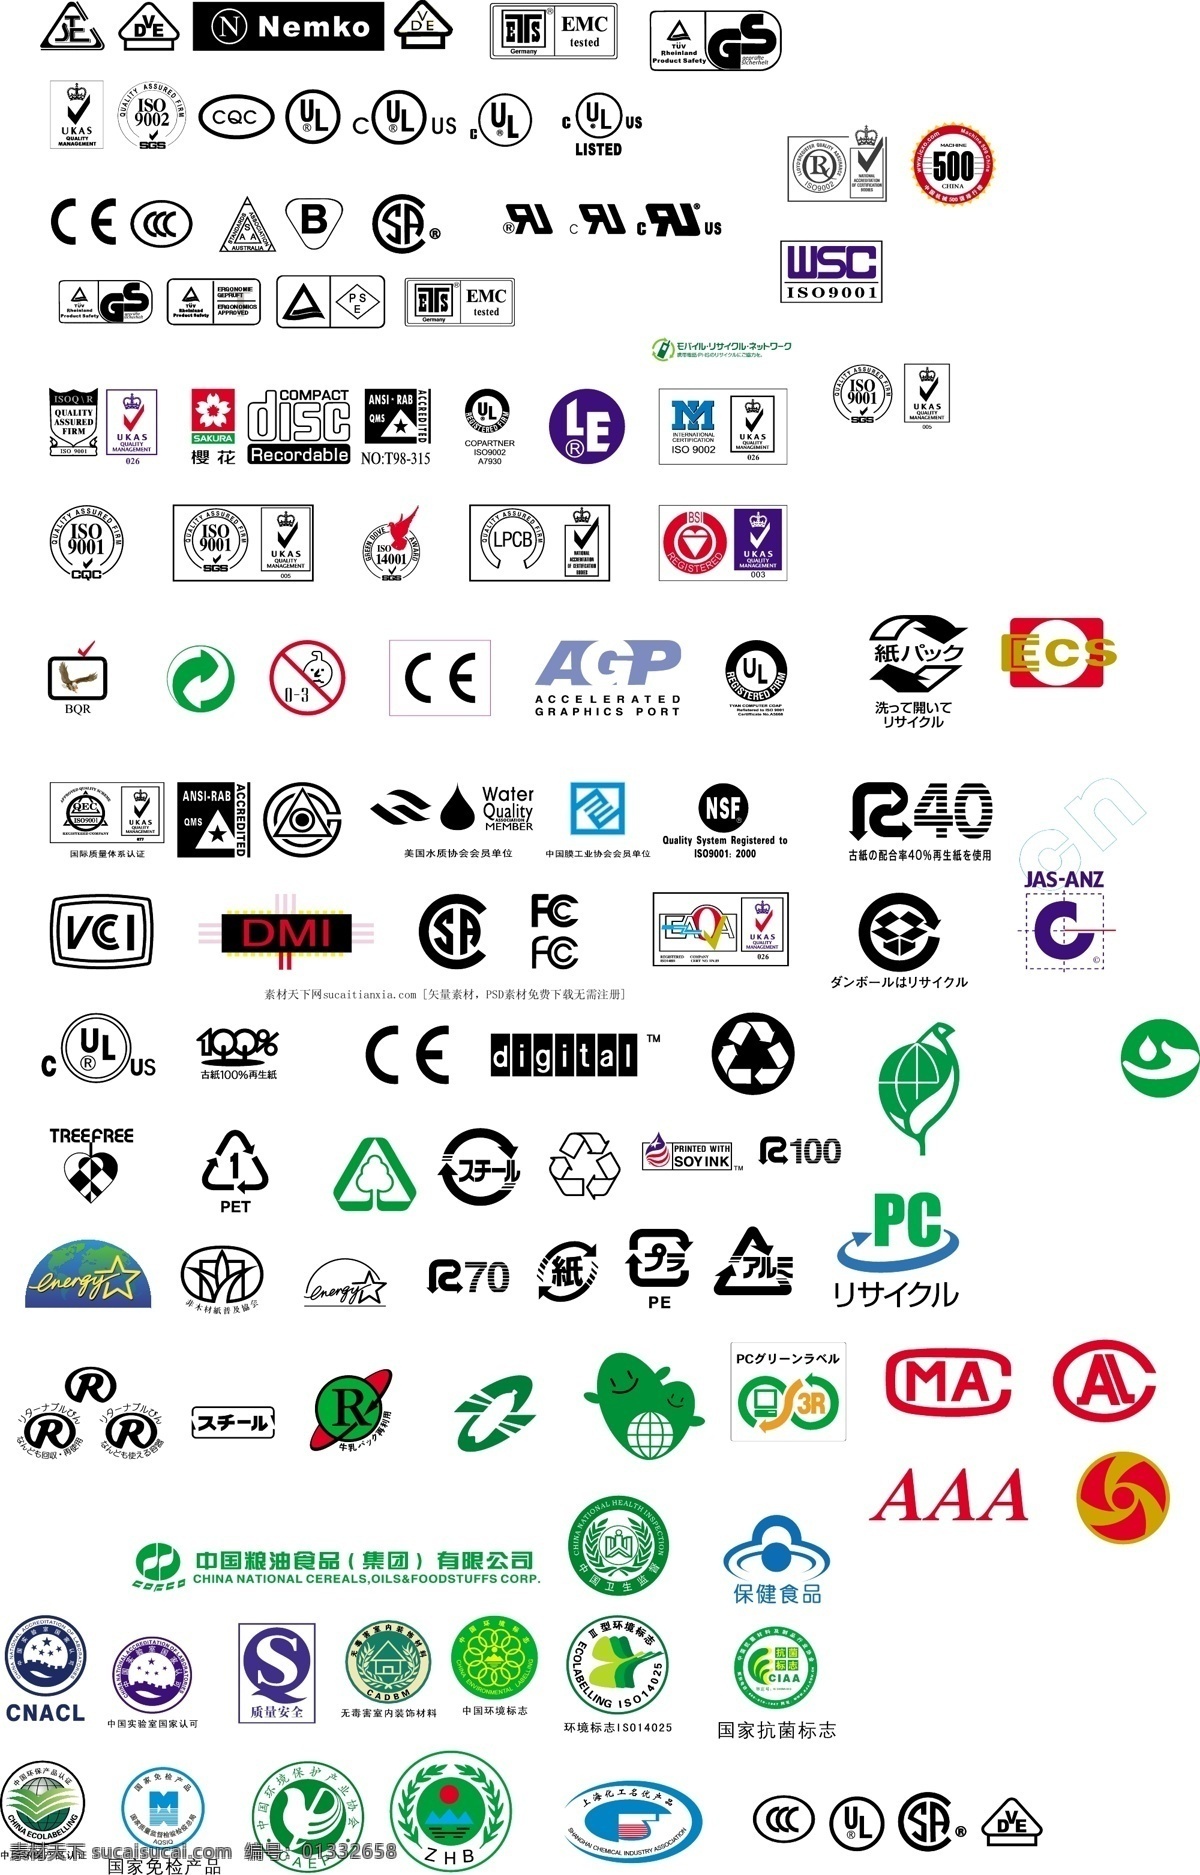 认证图标 ce 安全认证 图标 tuv 标志图标 企业 logo 标志